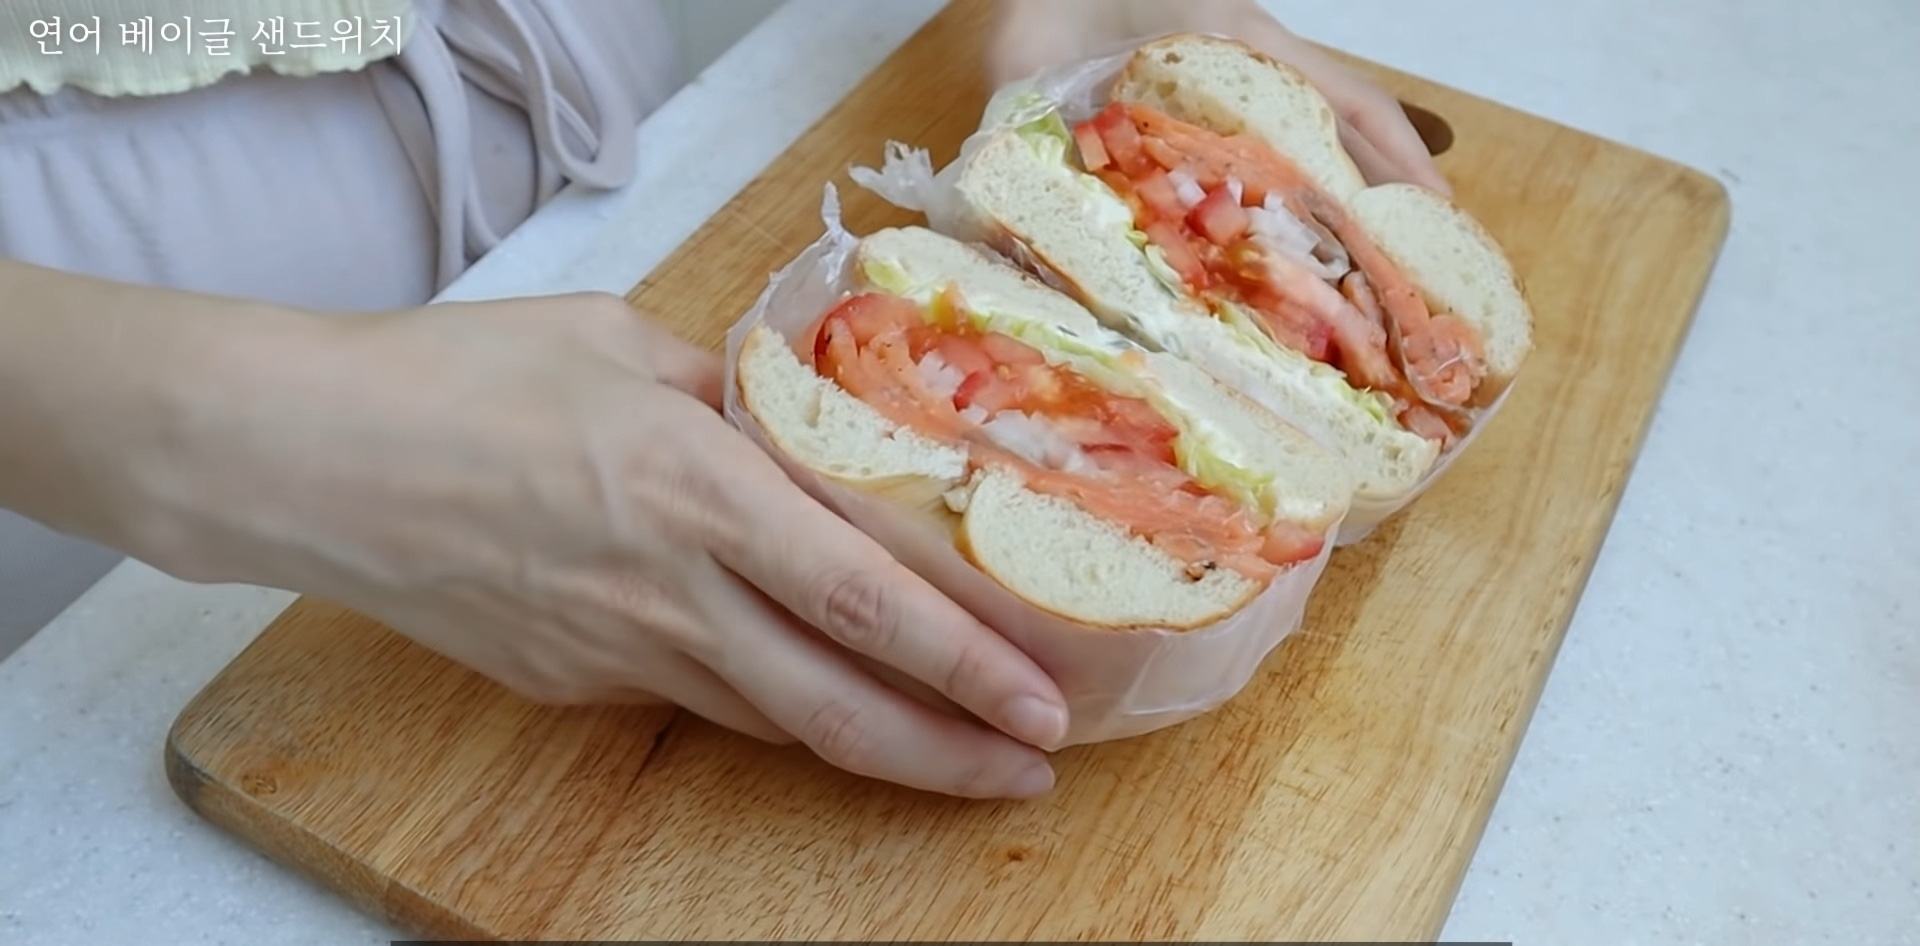 Vlogger Hàn chia sẻ bí quyết giảm 10kg nhờ tự tay làm những chiếc sandwich theo công thức của riêng mình - Ảnh 6.